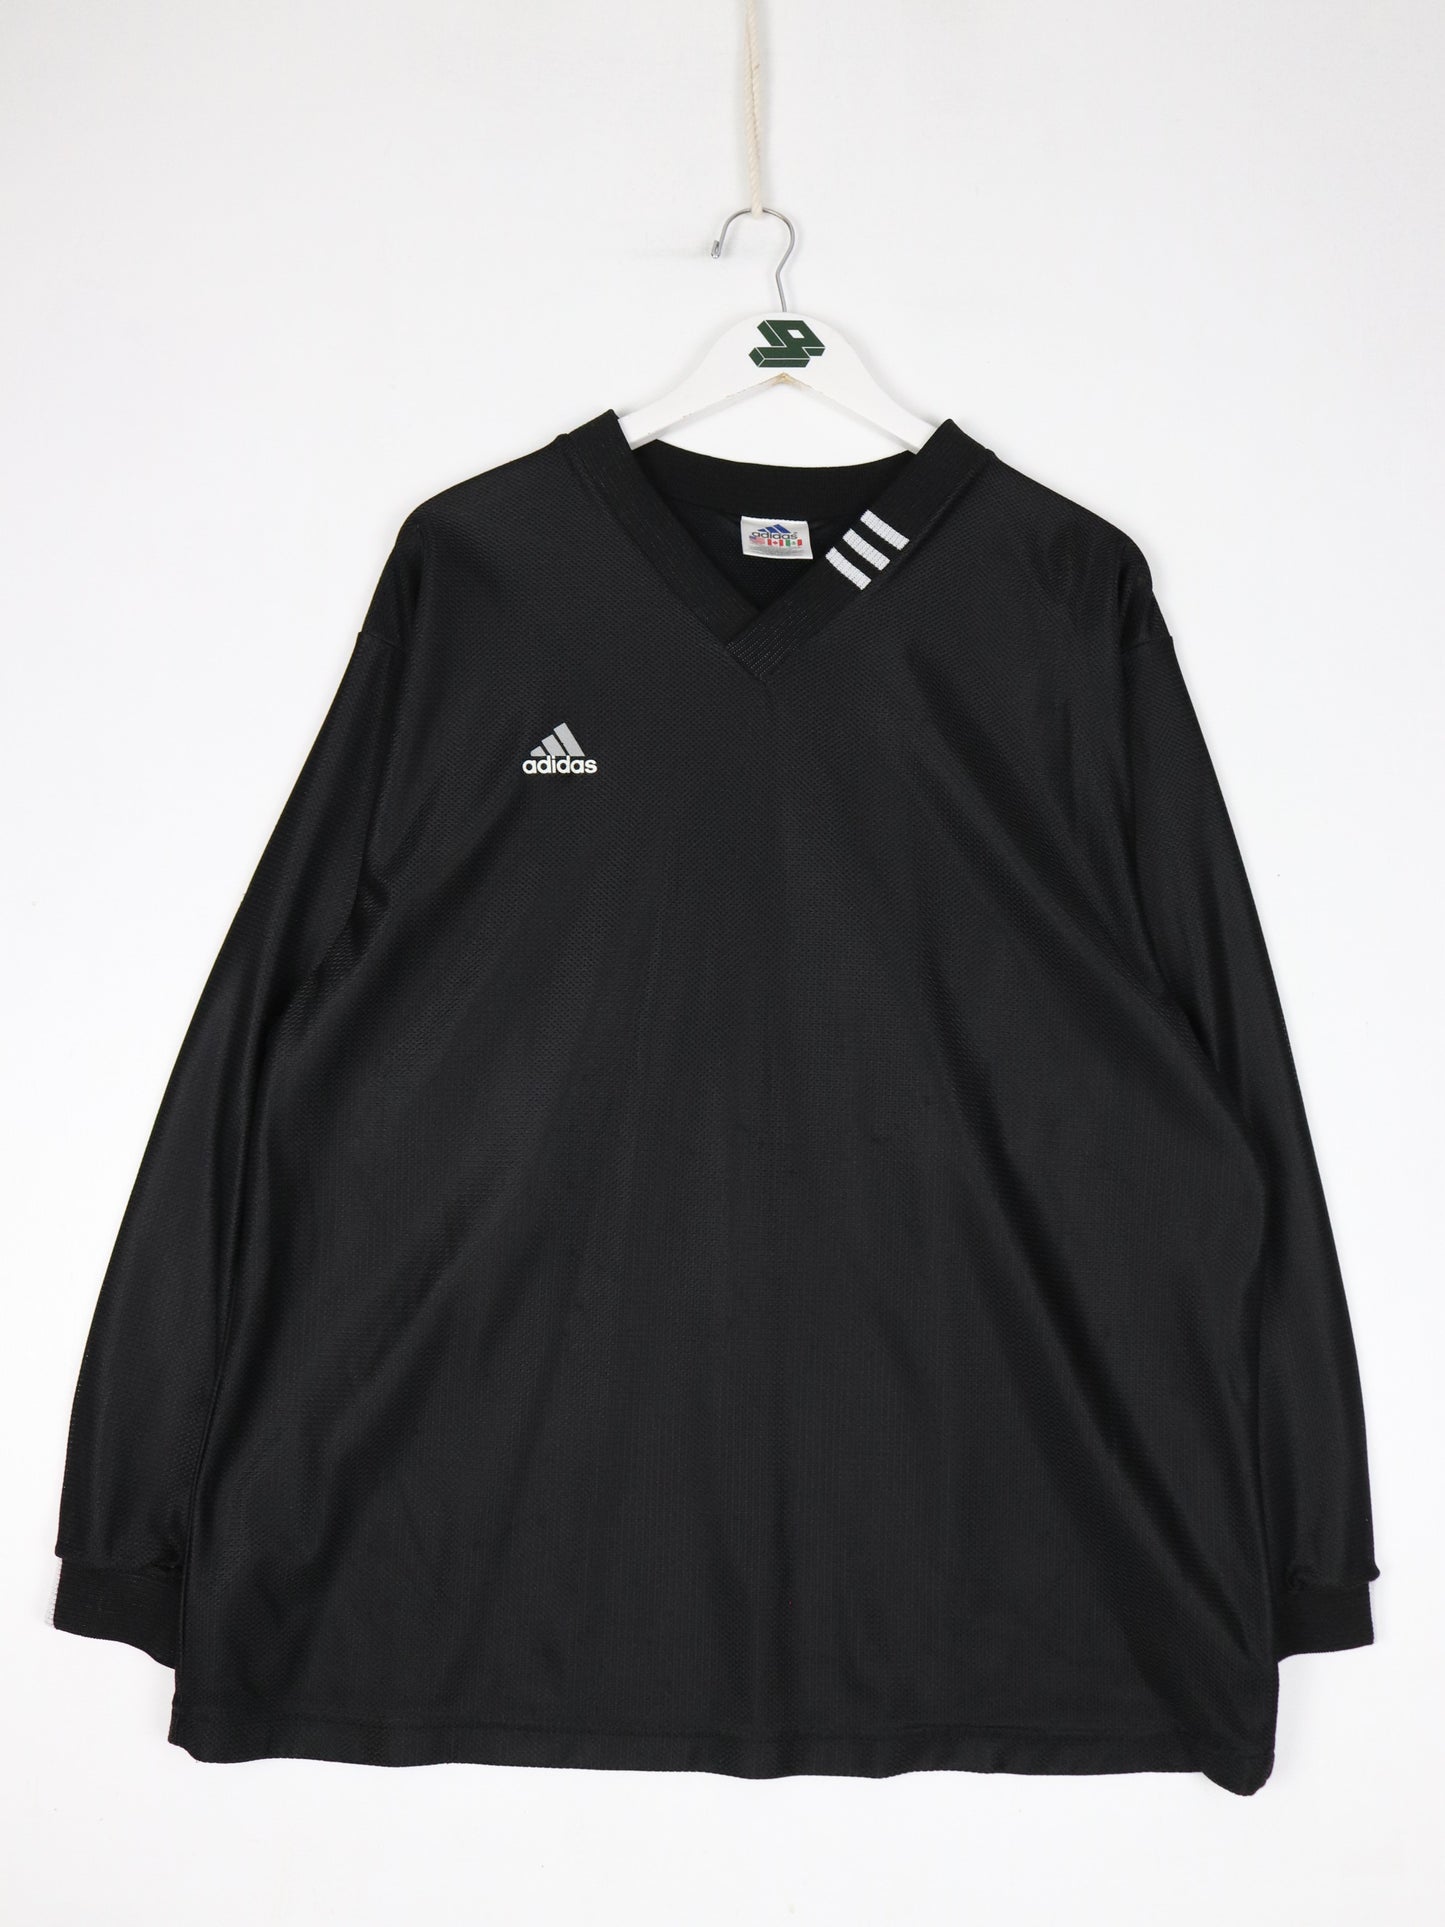 Vintage Adidas Jersey Mens Medium Black V Neck